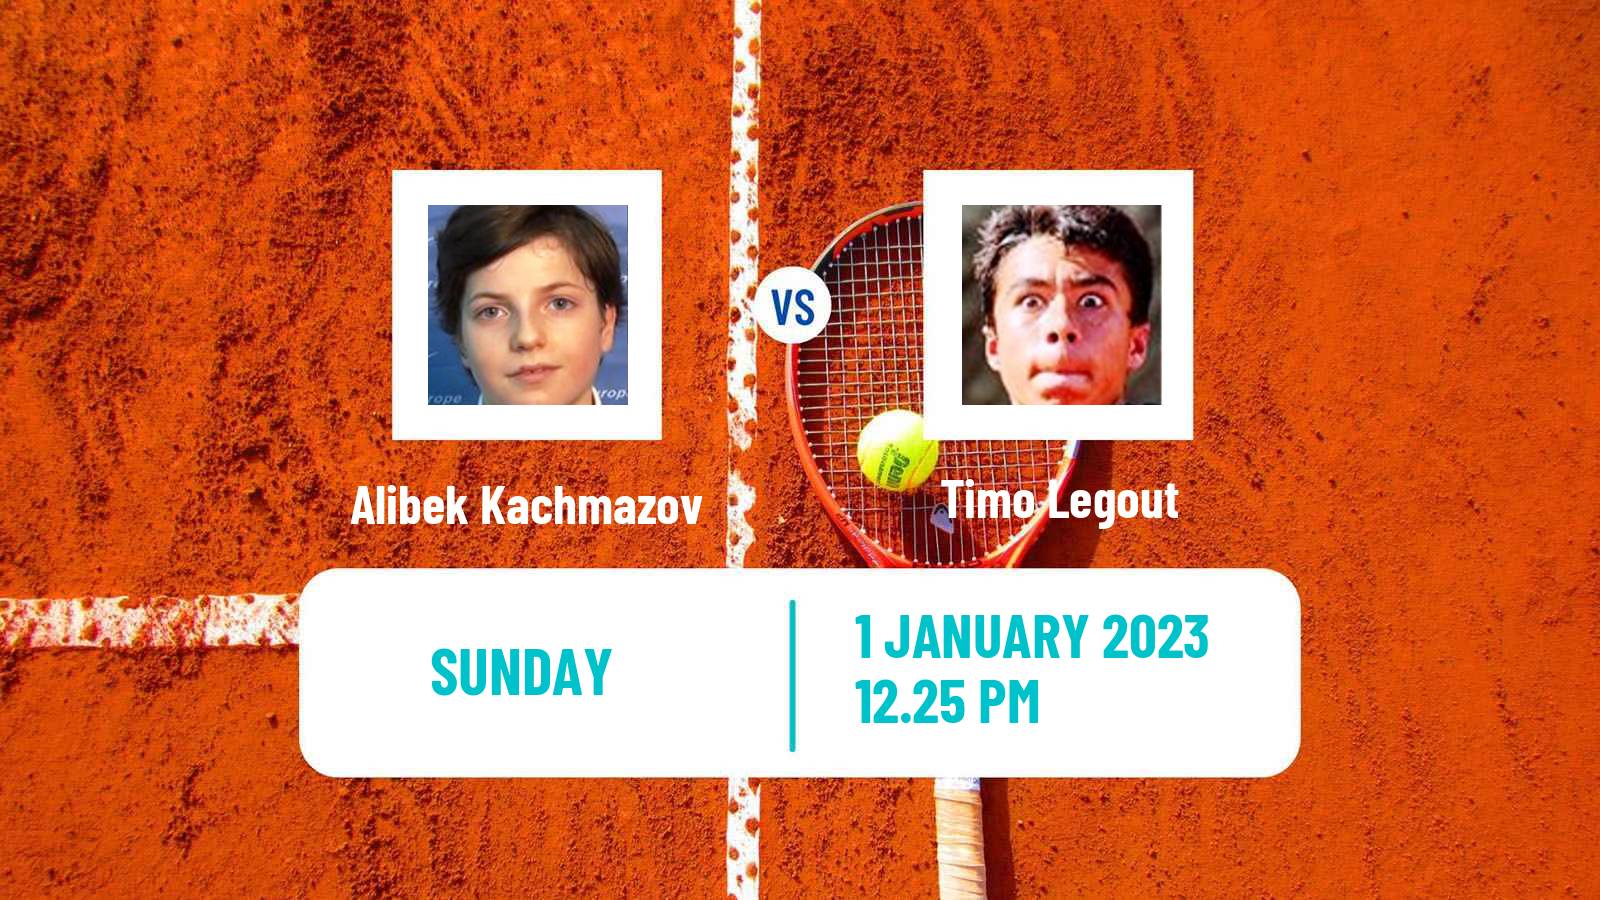 Tennis ATP Challenger Alibek Kachmazov - Timo Legout